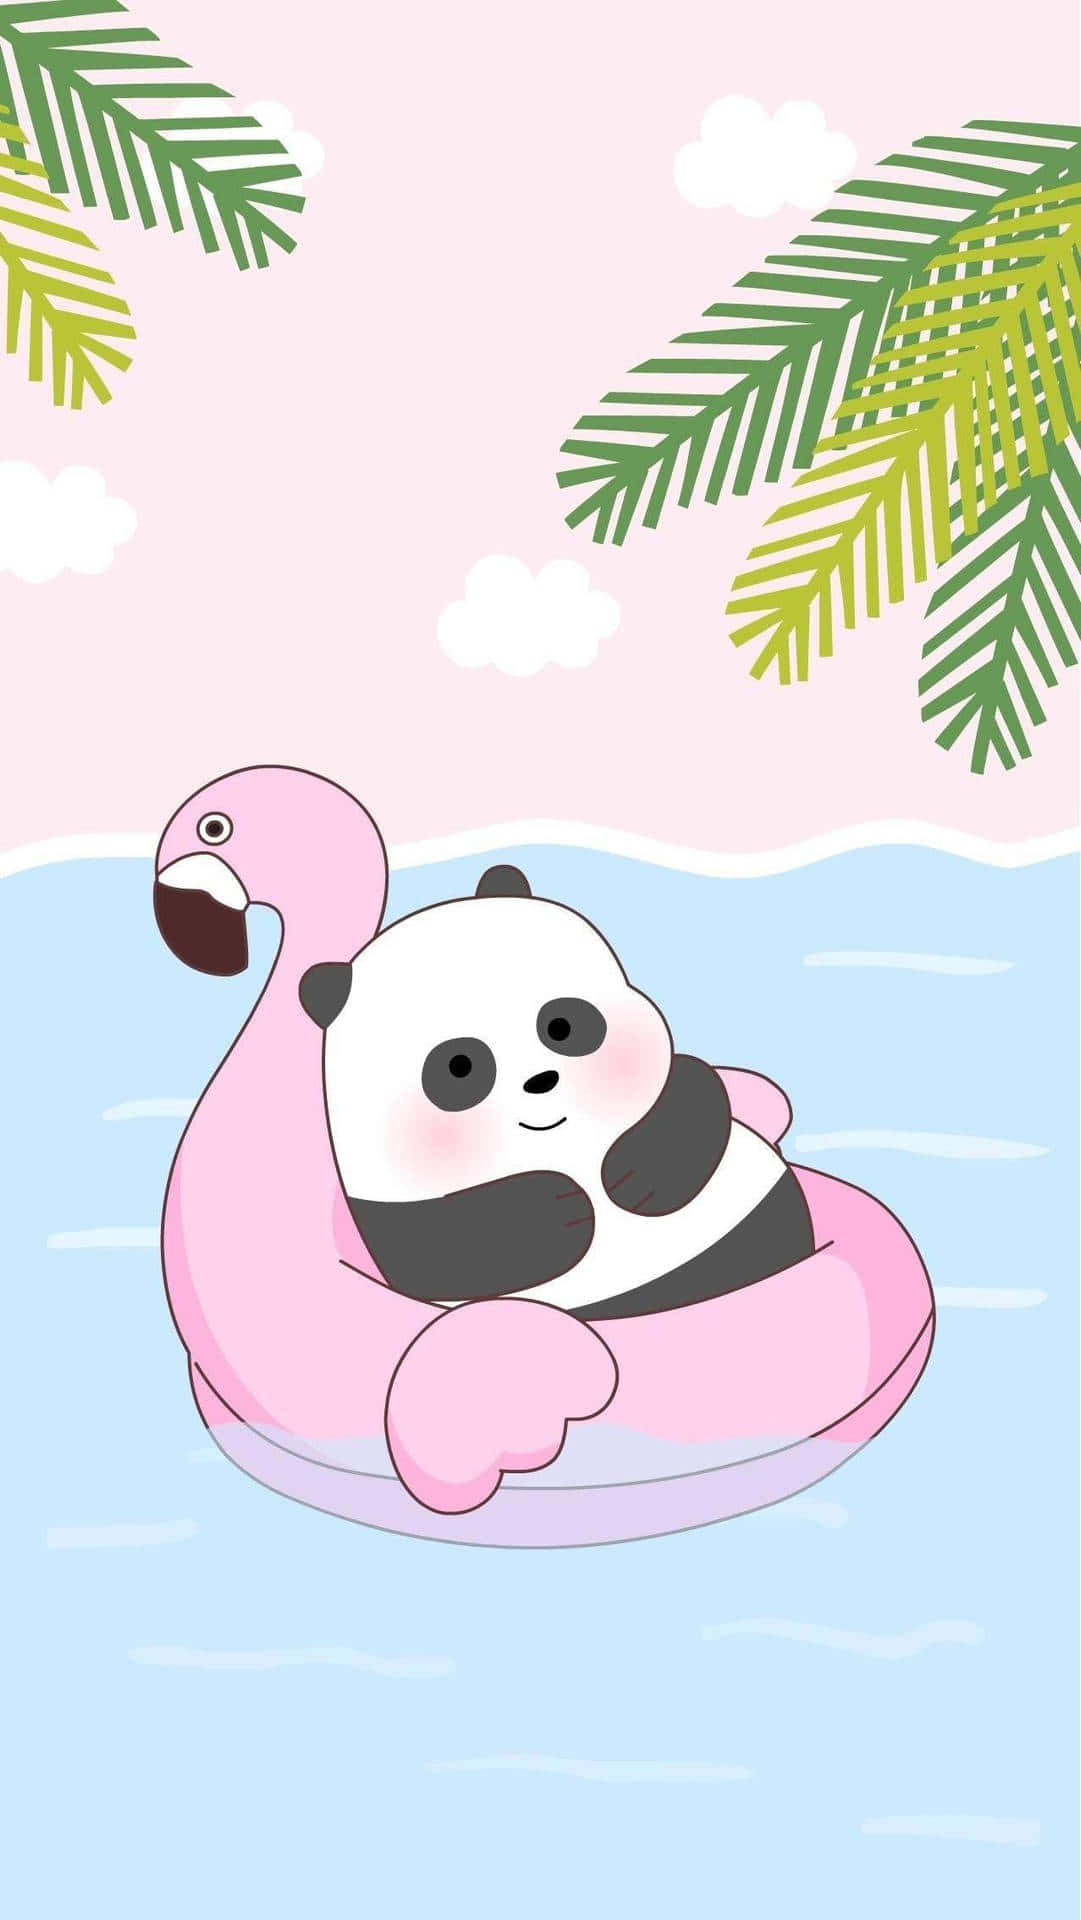 Söttecknad Panda Och Flamingo Till Dator Eller Mobilbakgrund. Wallpaper